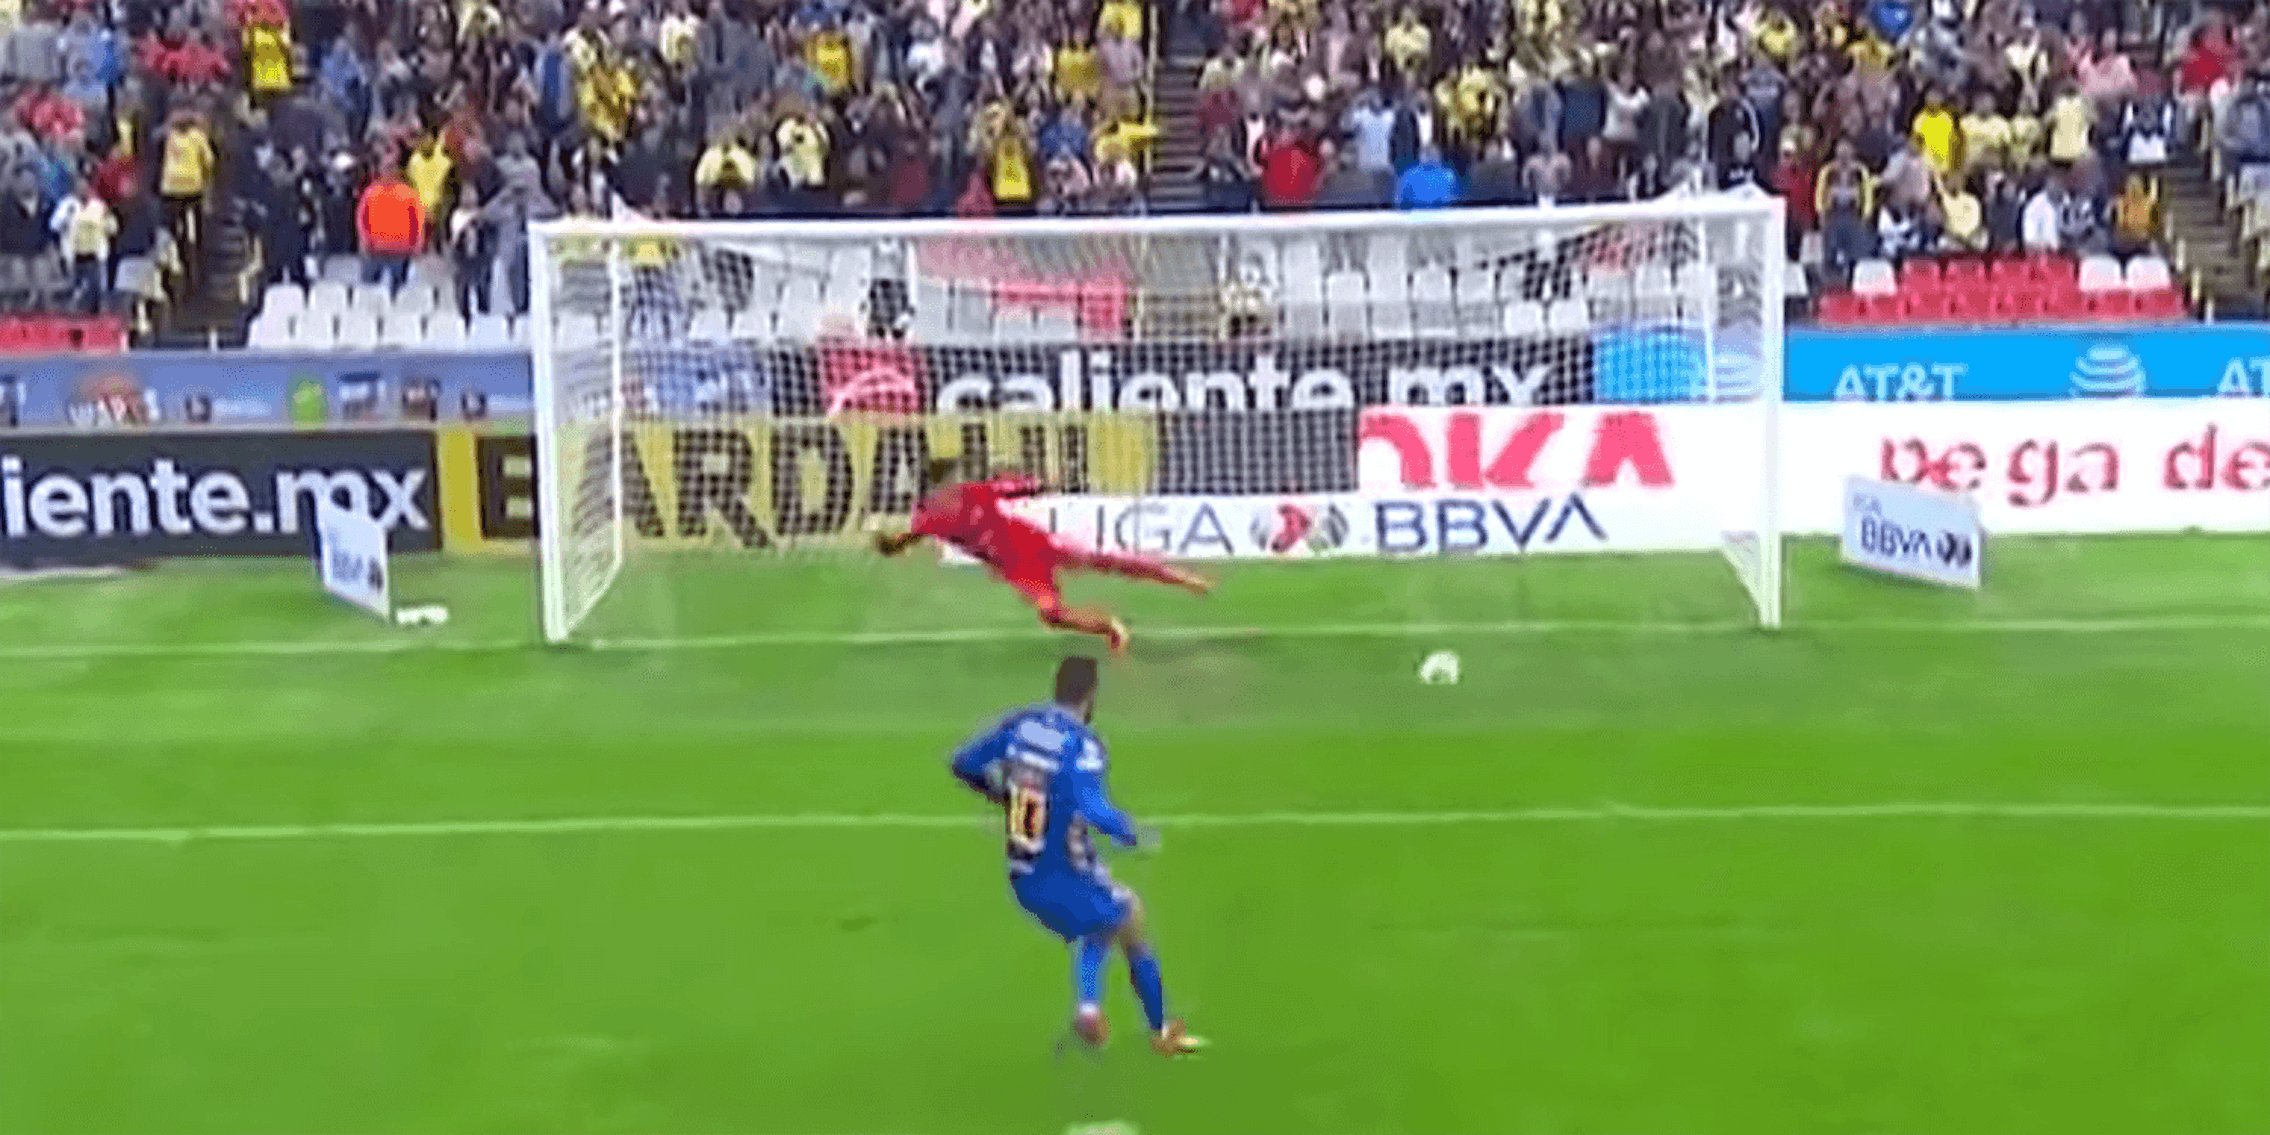 Gignac converting penalty kick